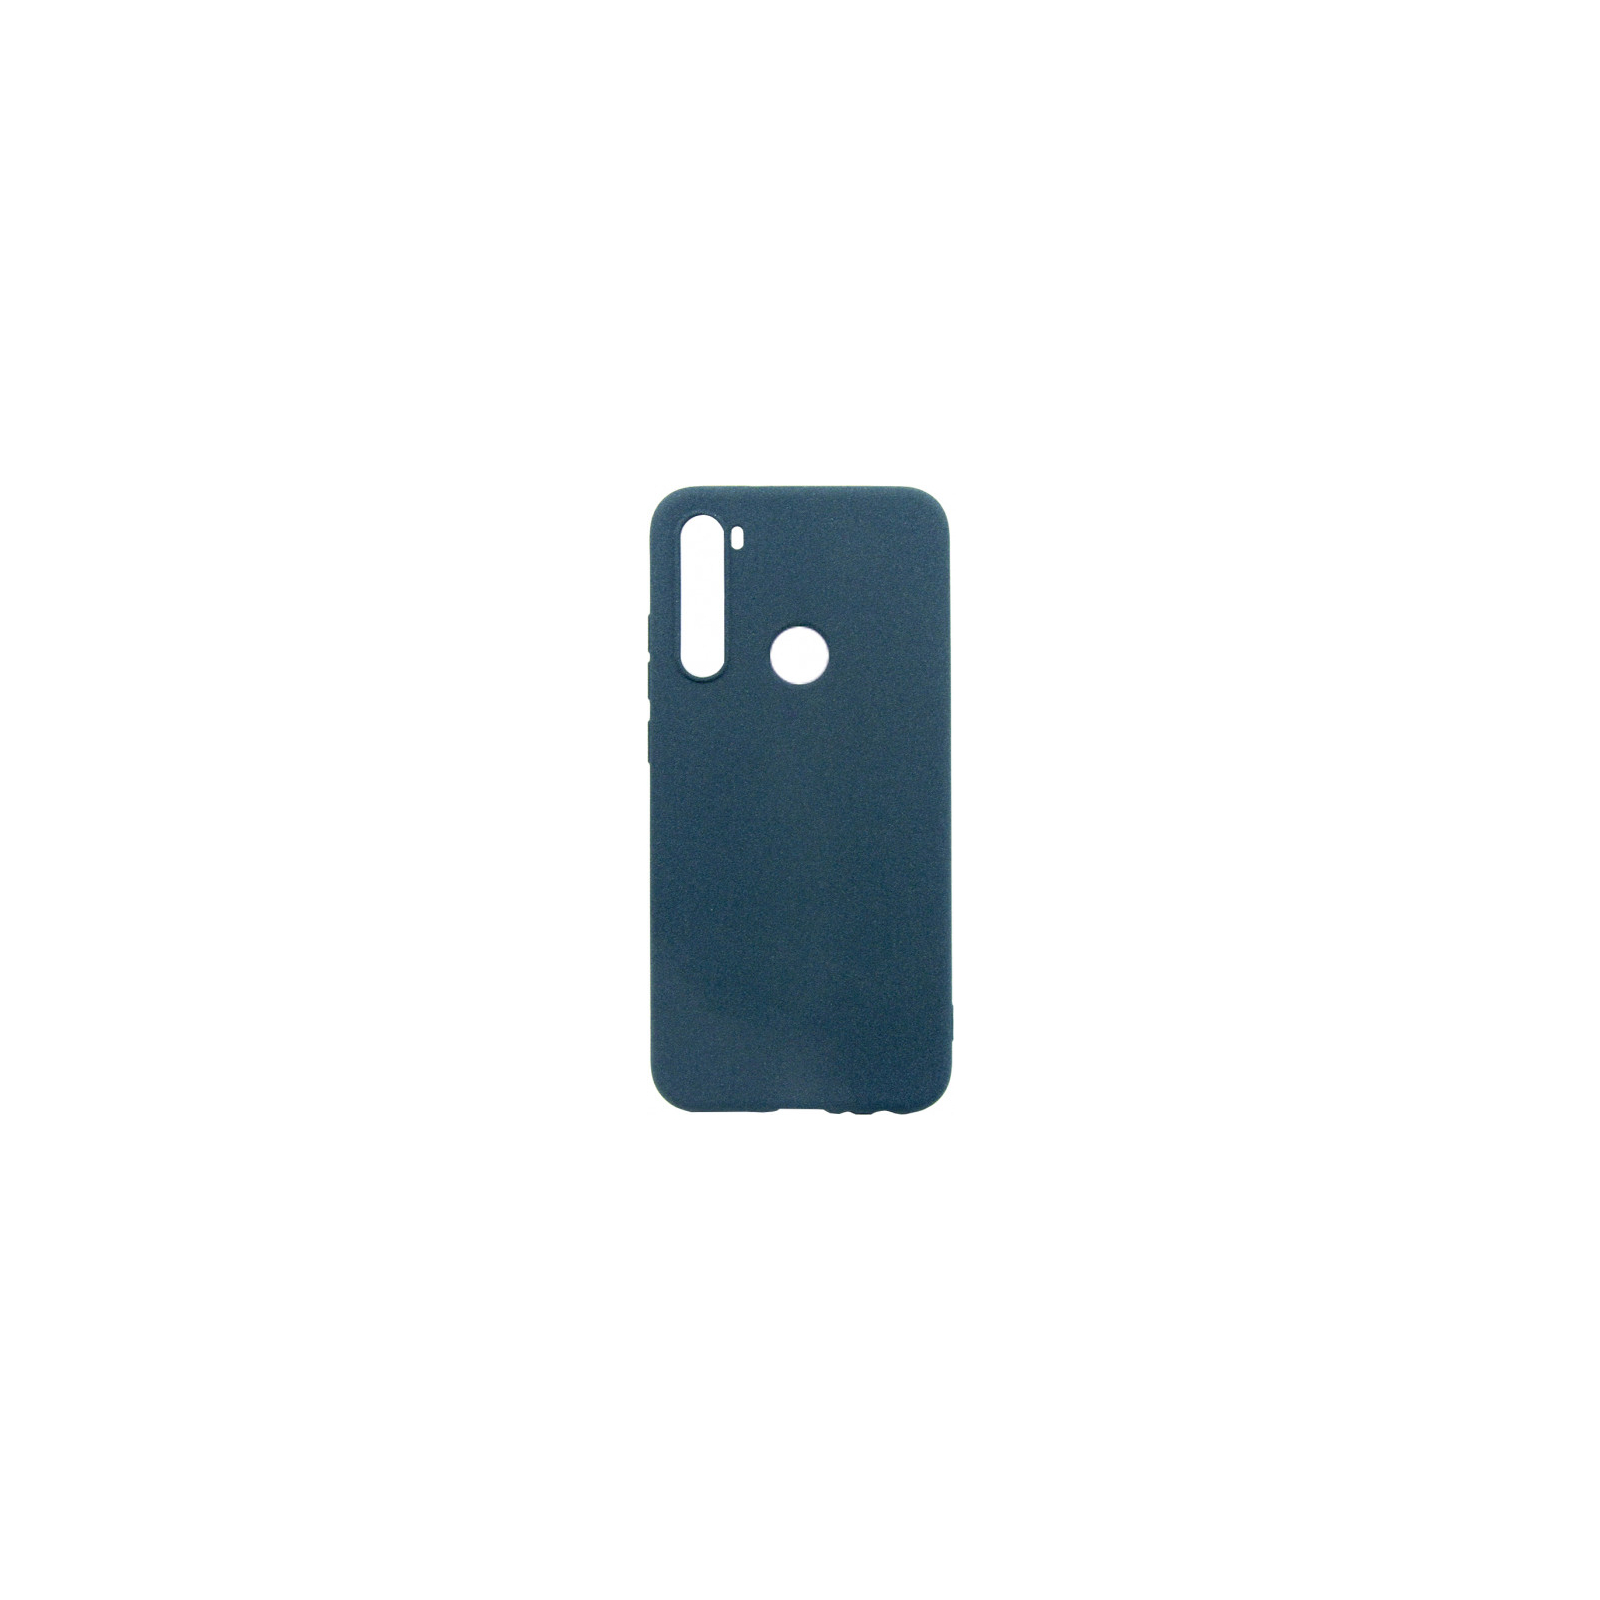 Чехол для мобильного телефона Dengos Carbon Xiaomi Redmi Note 8, blue (DG-TPU-CRBN-18) (DG-TPU-CRBN-18)